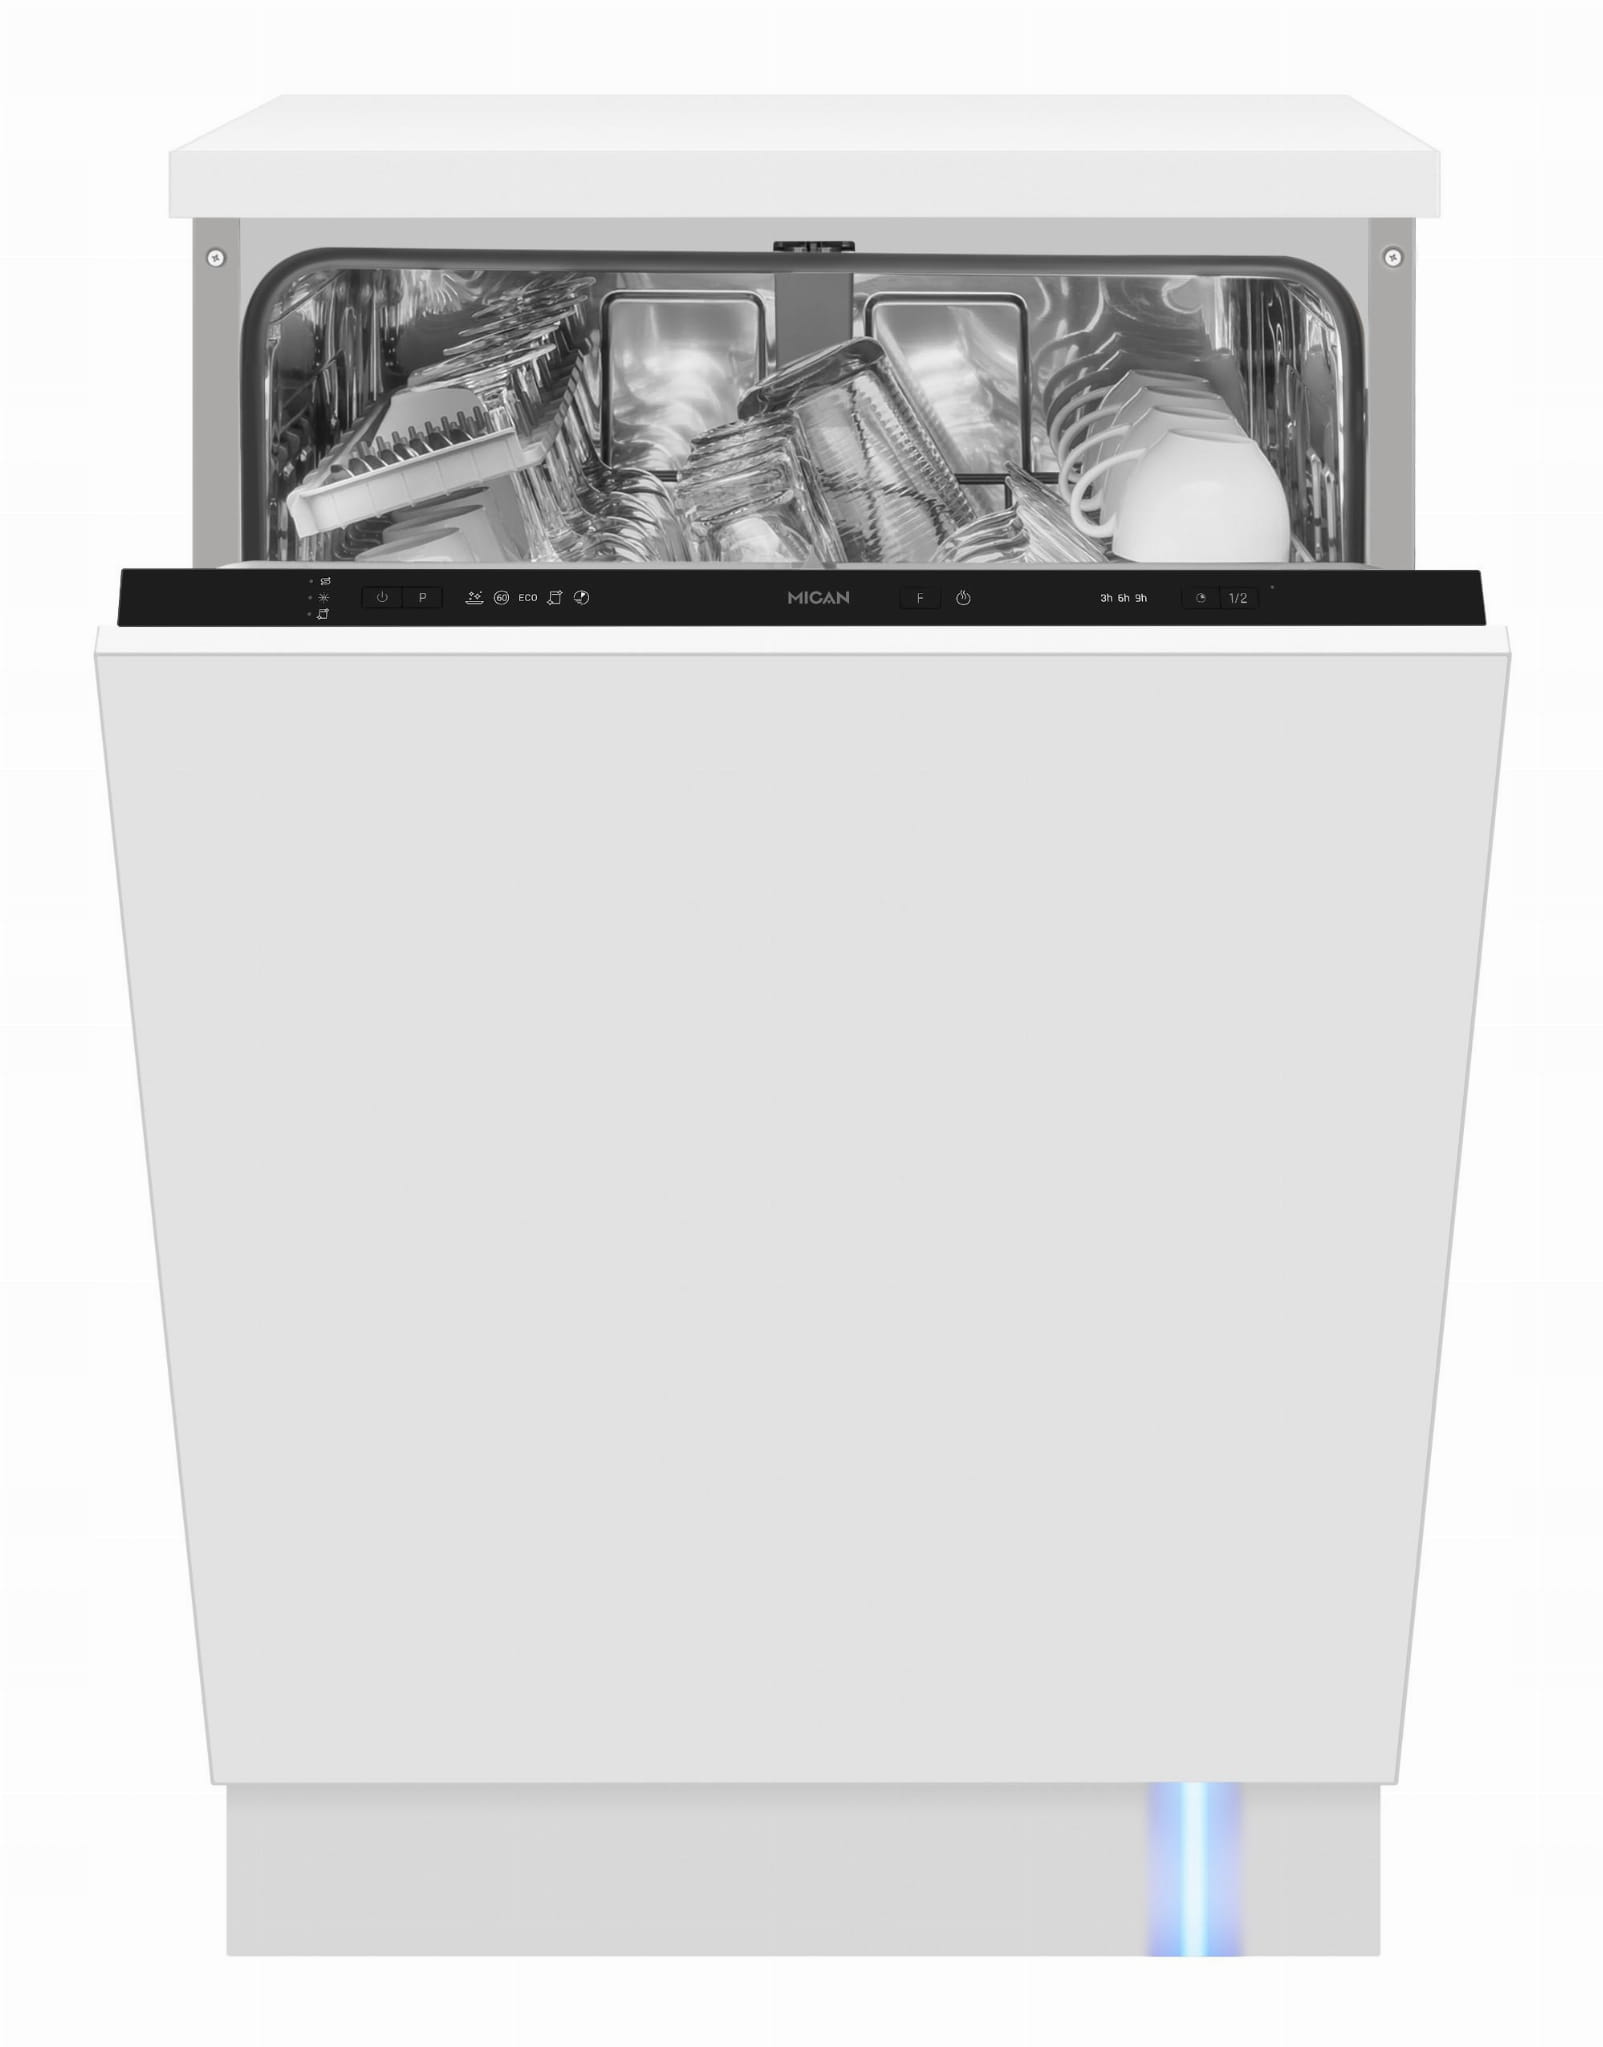 Купить посудомоечную машину отзывы. Встраиваемая посудомоечная машина Hansa zim674h. Посудомоечная машина Hansa Zim 654 h. Машина посудомоечная Hansa zim615bq. Hansa Zim 4677 ev.